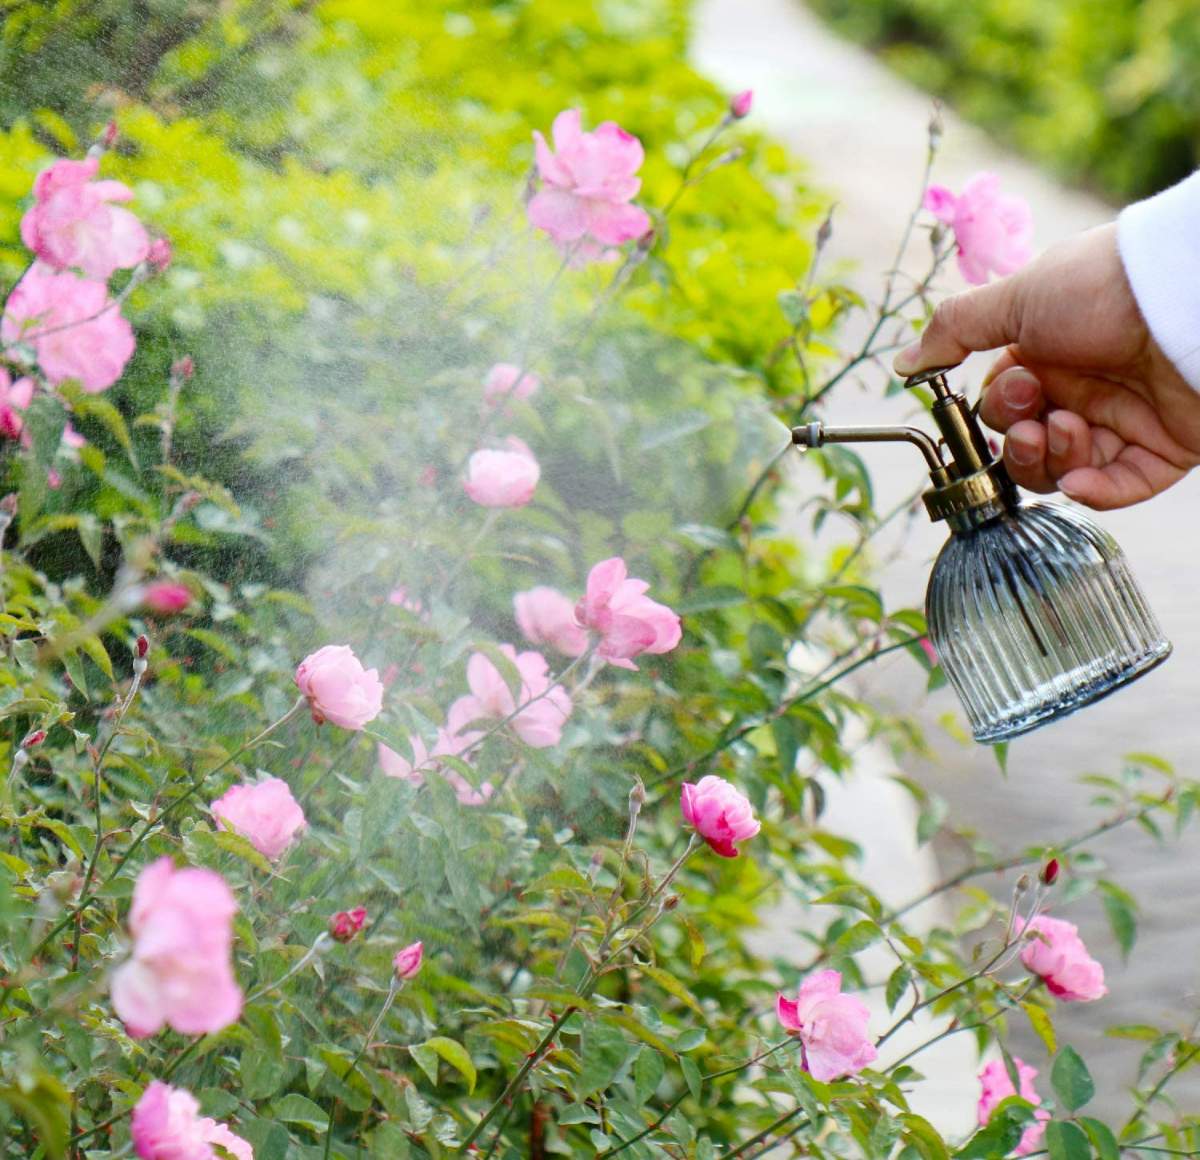 園芸用霧吹き | アンティークなデザインが素敵なお花水やり用の霧吹きです。色々な用途に用いることができます。お花をはじめとしてハーブや多肉植物といった植物へ水やりのほか、家庭の掃除や窓拭きにもご利用可能です。|undefined